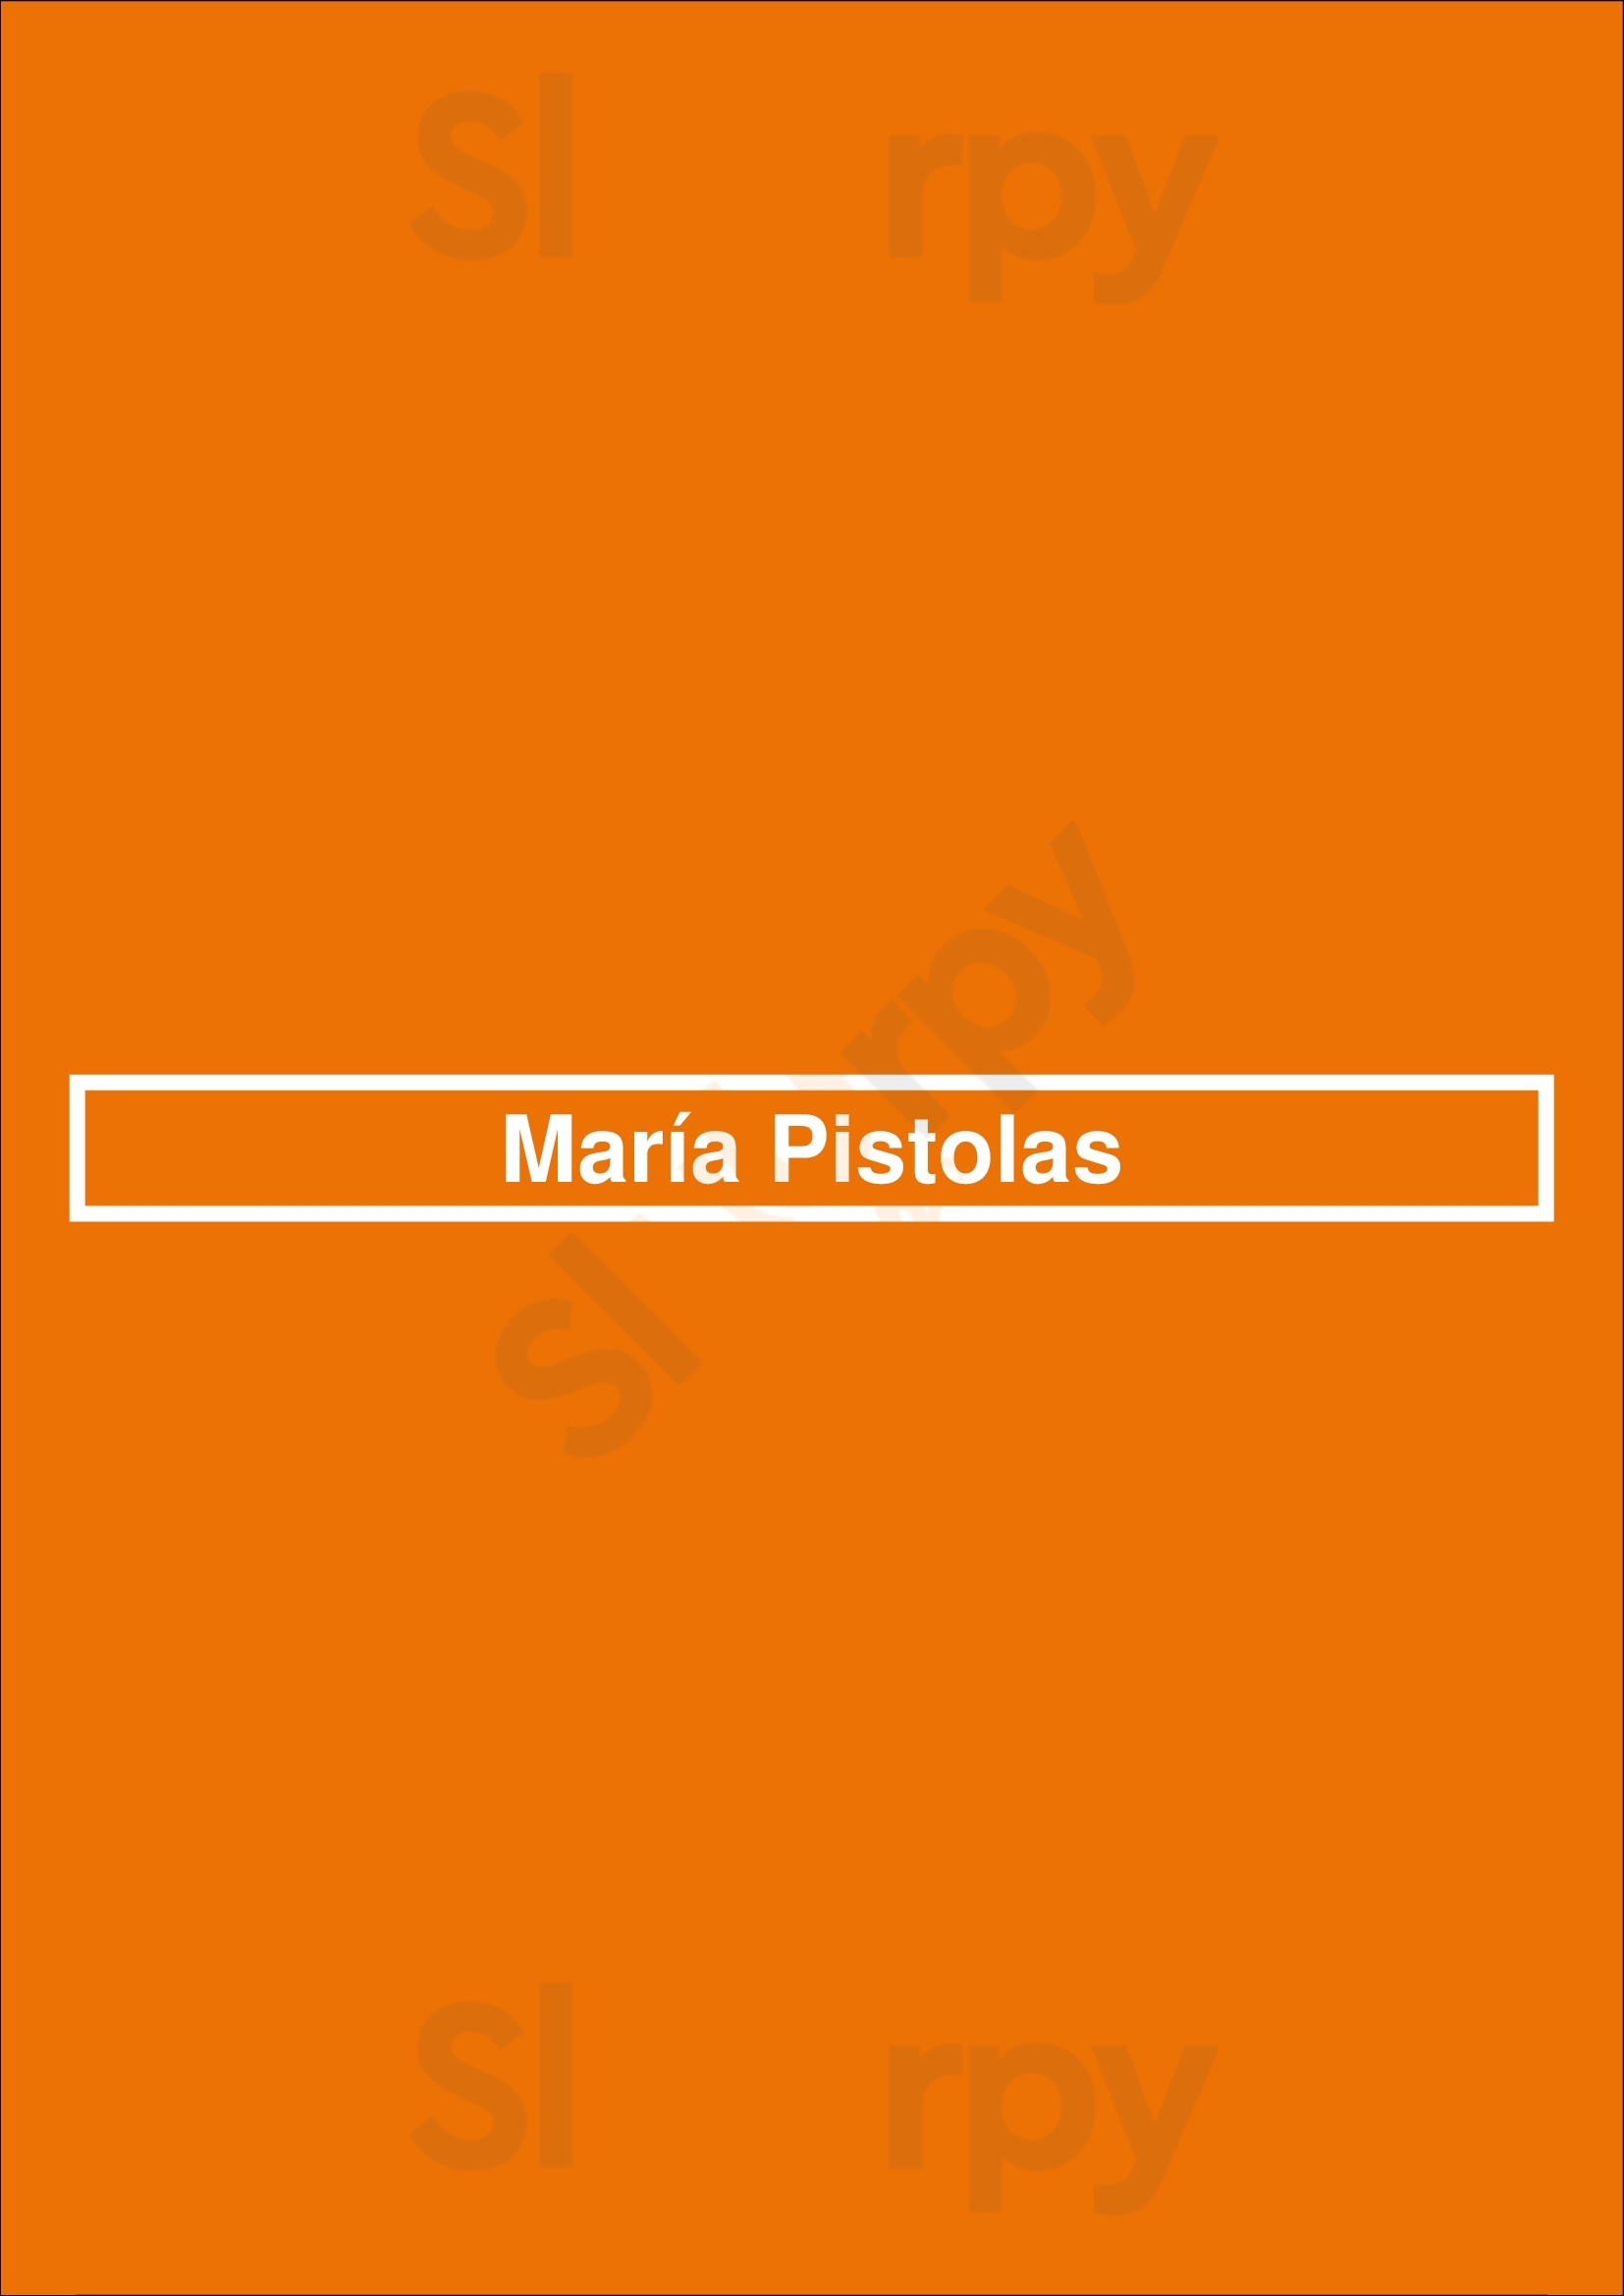 María Pistolas Málaga Menu - 1